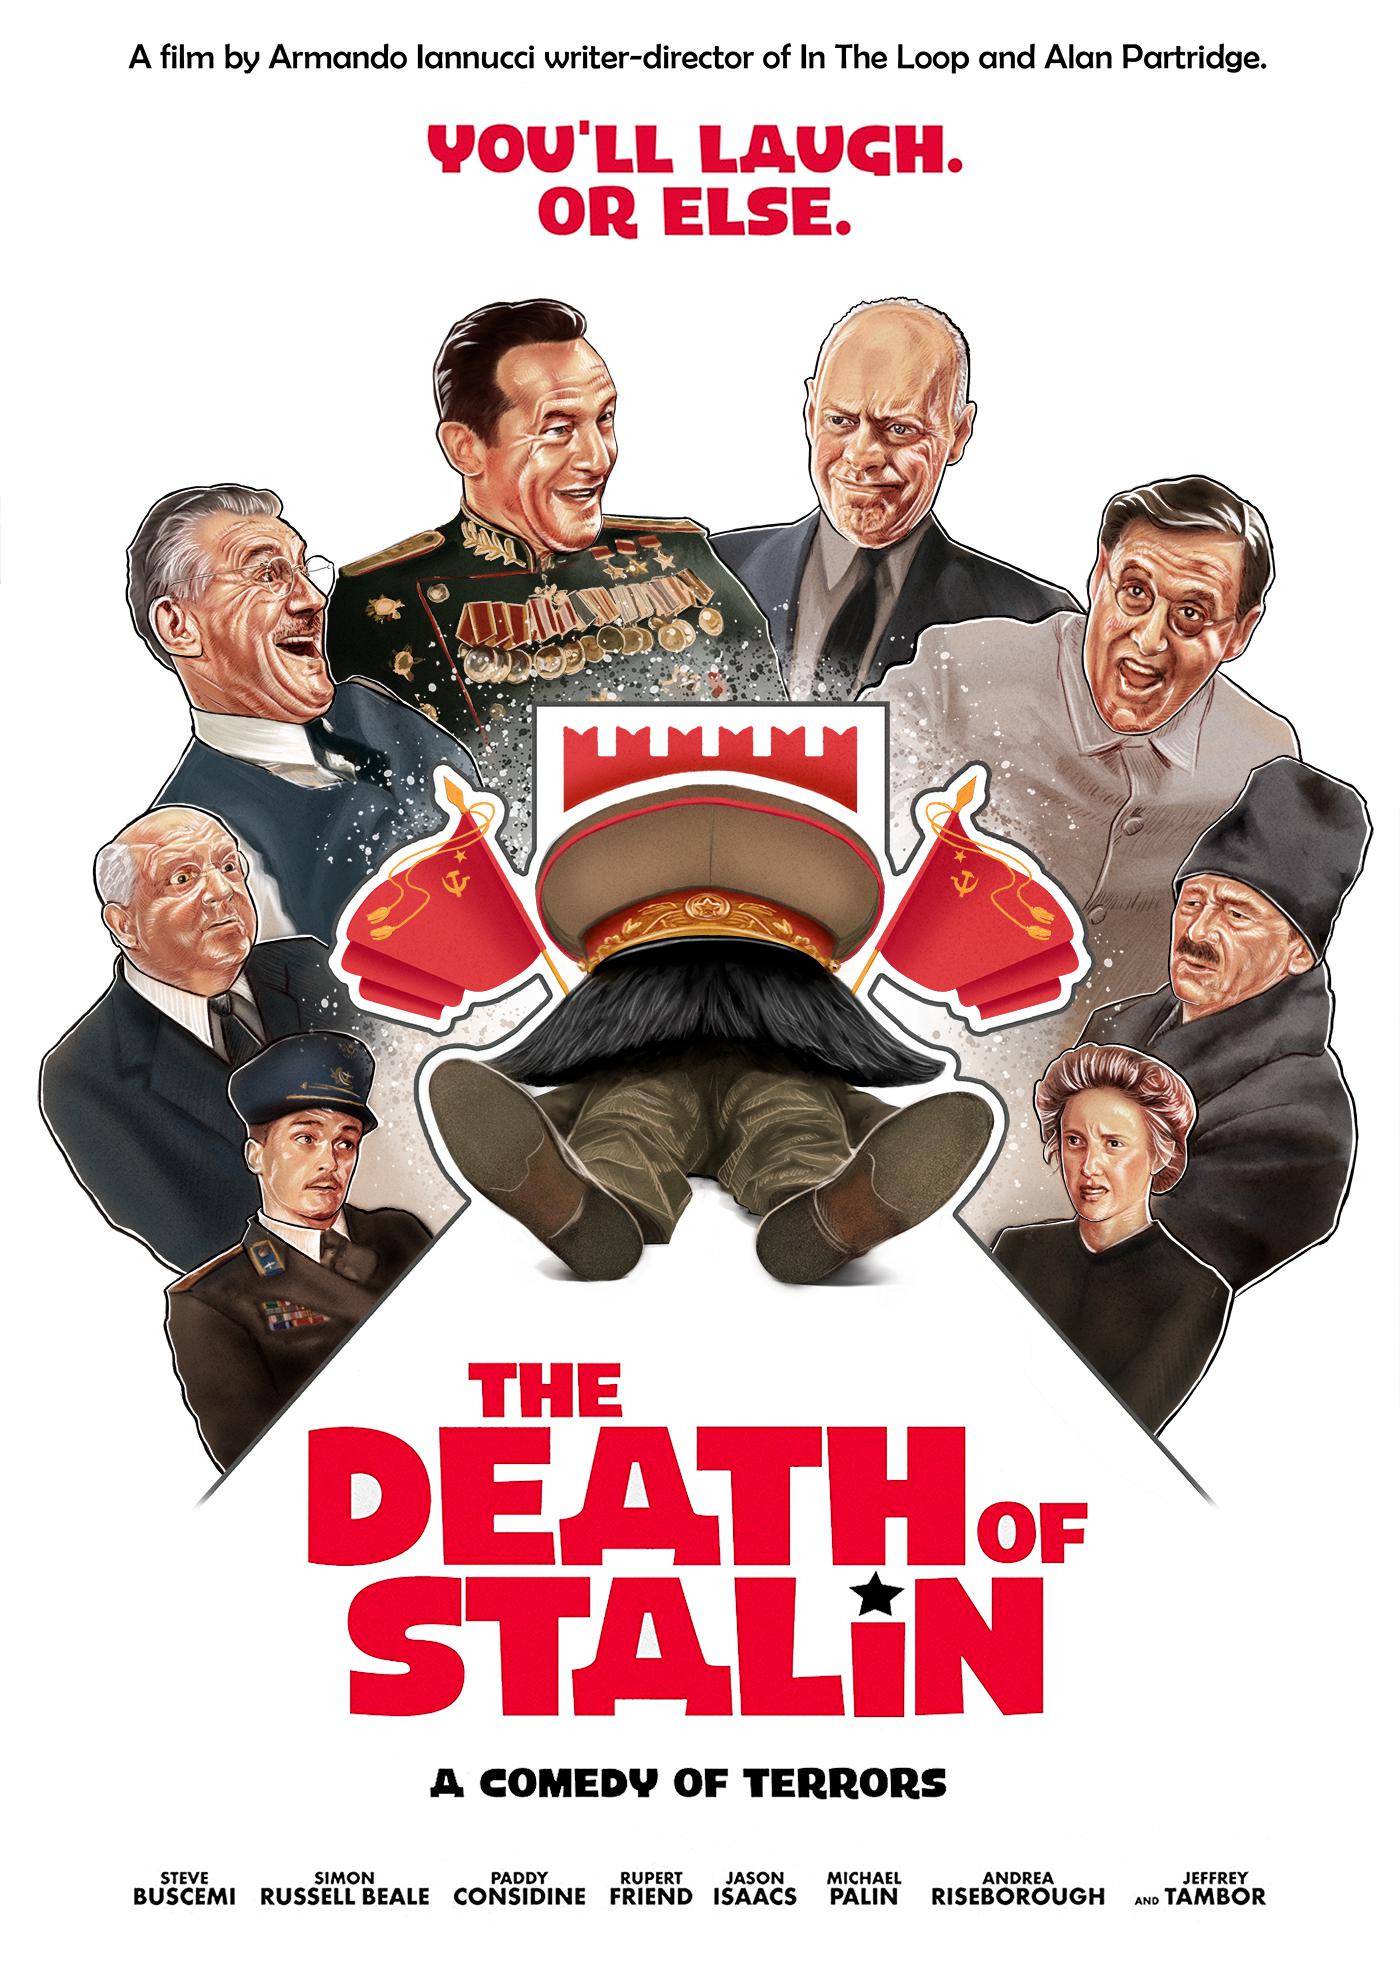 【影評】史達林死了沒？｜捧腹大笑背後那不寒而慄的事實 - 945電影, bt, ptt, The Death of Stalin, 傑森艾塞克, 史蒂夫布希密, 史達林死了沒, 好看嗎, 字幕, 弊傢伙！史太林死咗, 彩蛋, 影評, 心得, 斯大林之死, 線上看 - 多多看電影-最新、最豐富的影視評論和新聞！